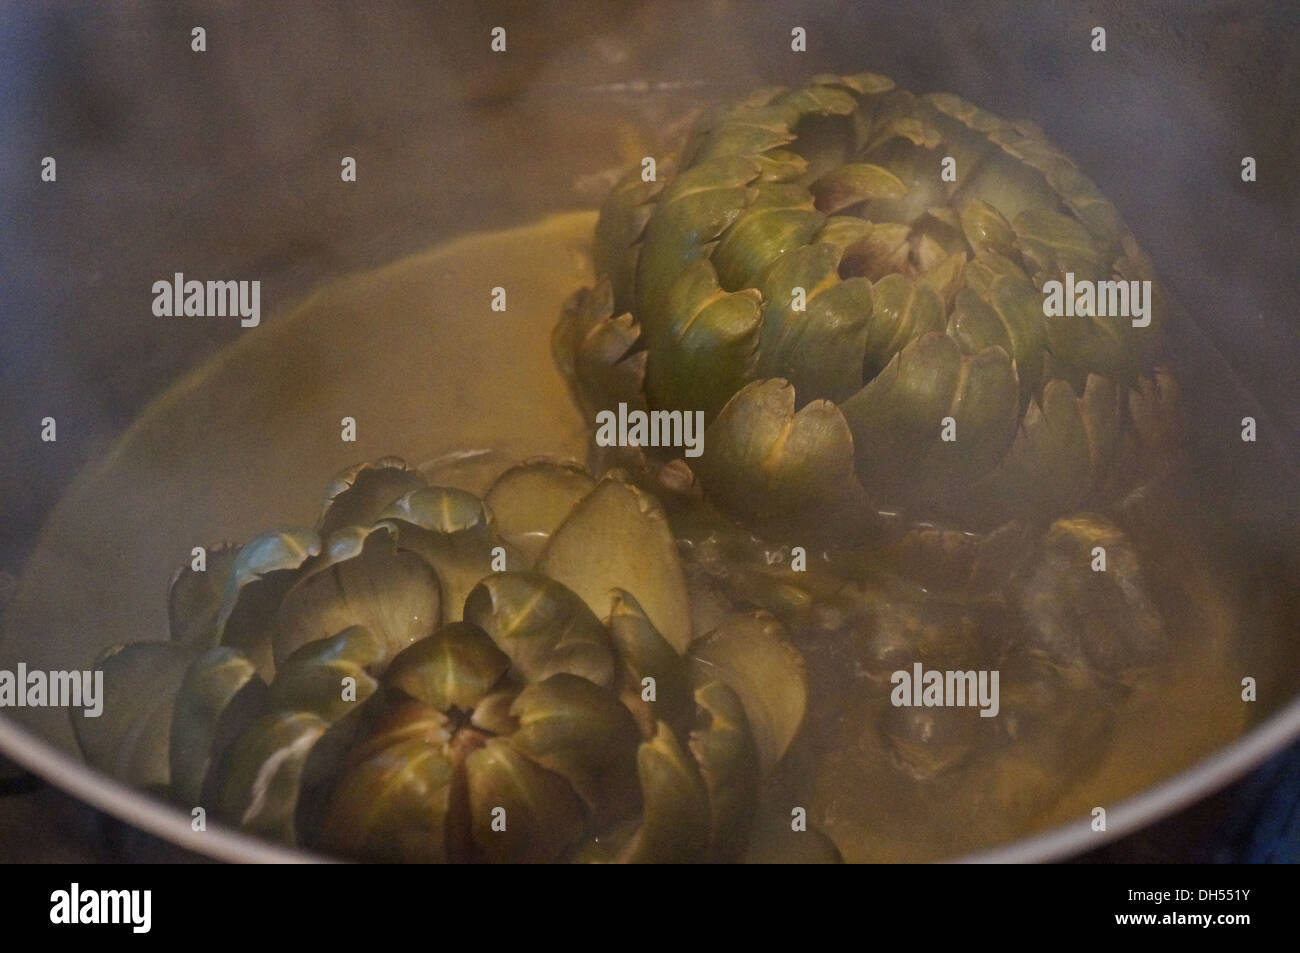 Boil  artichoke in water Stock Photo